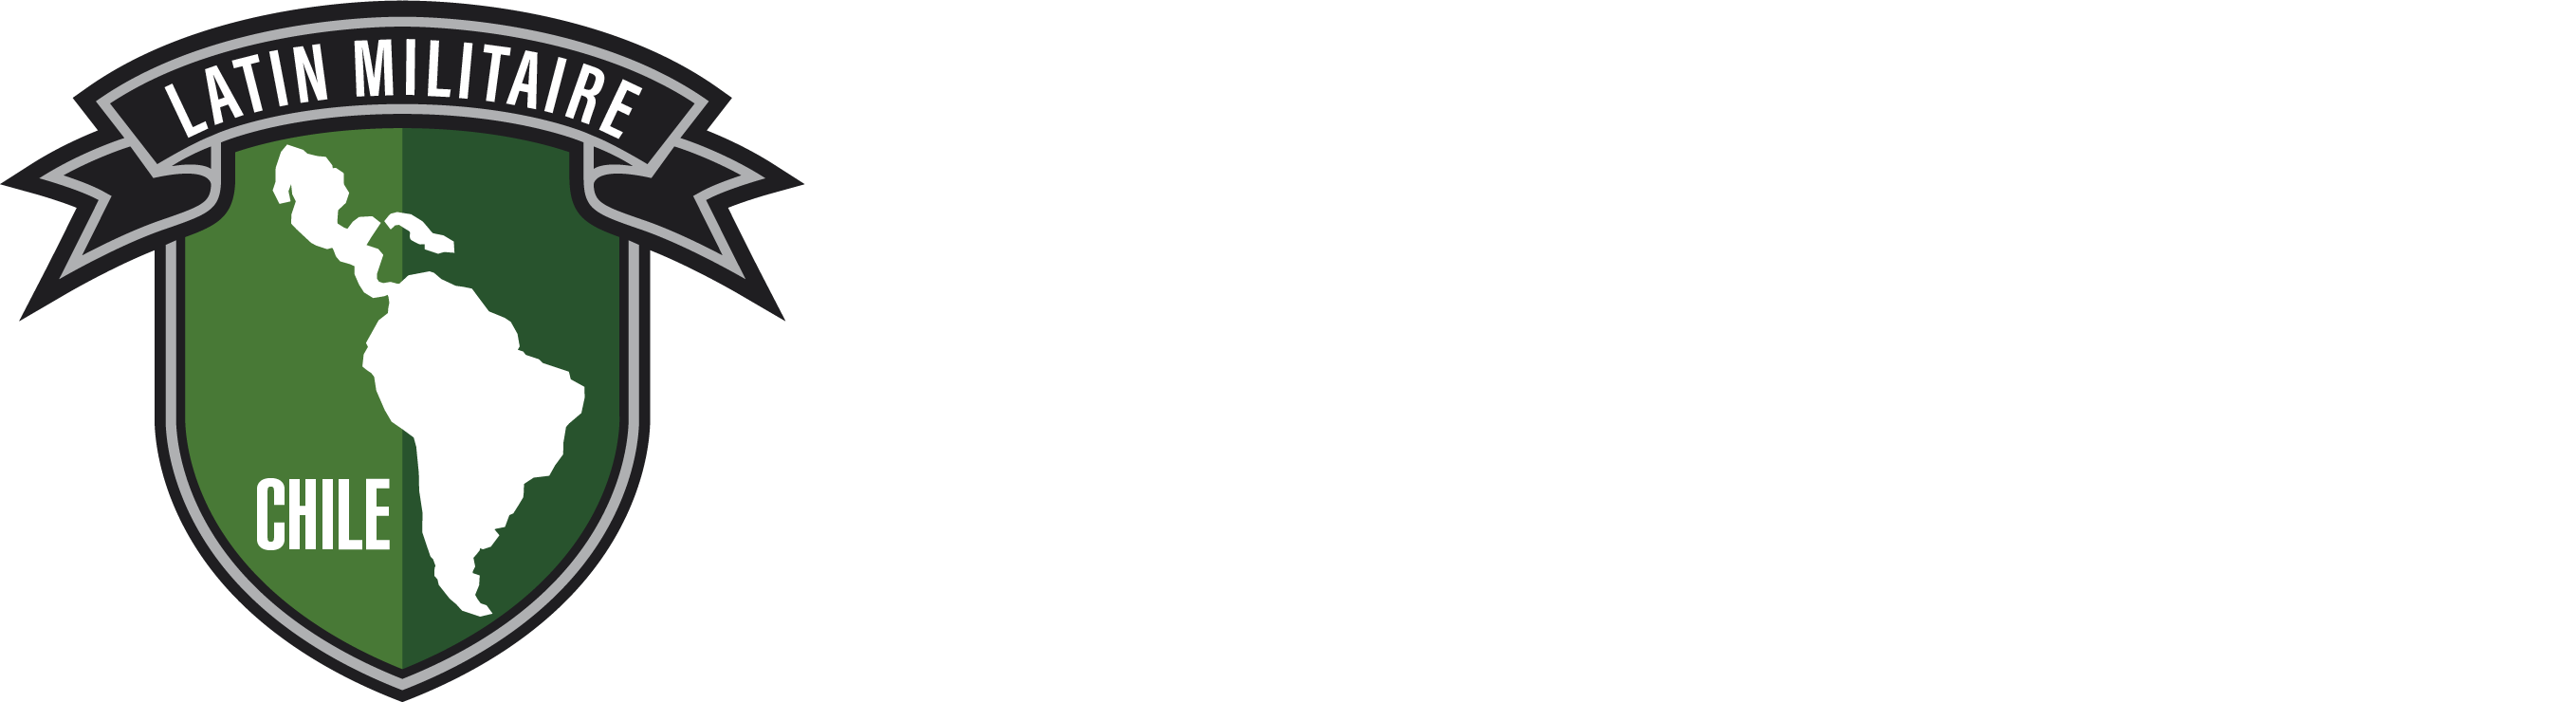 Latin Militaire